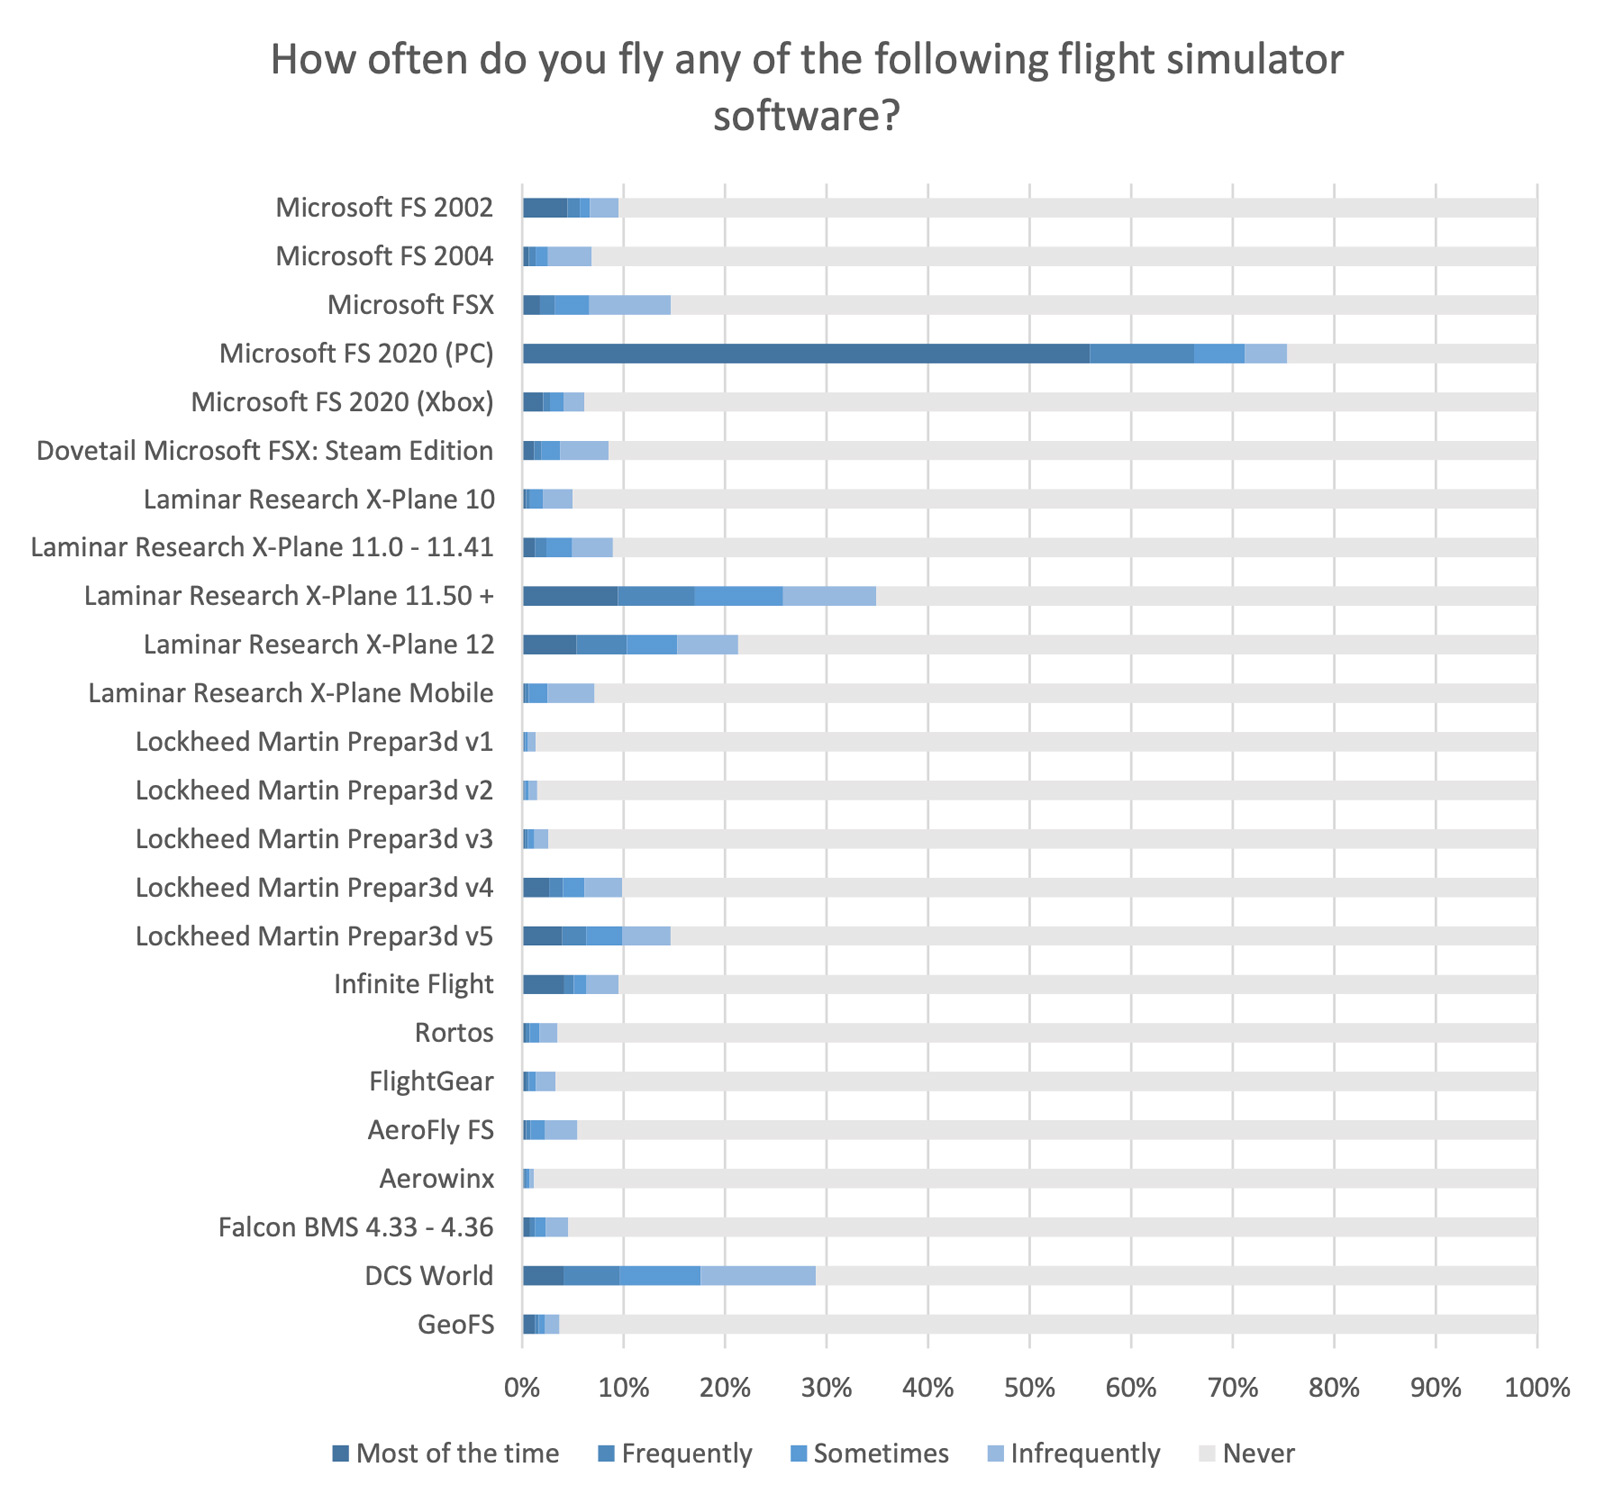 flightsim survey results most popular platform 2022